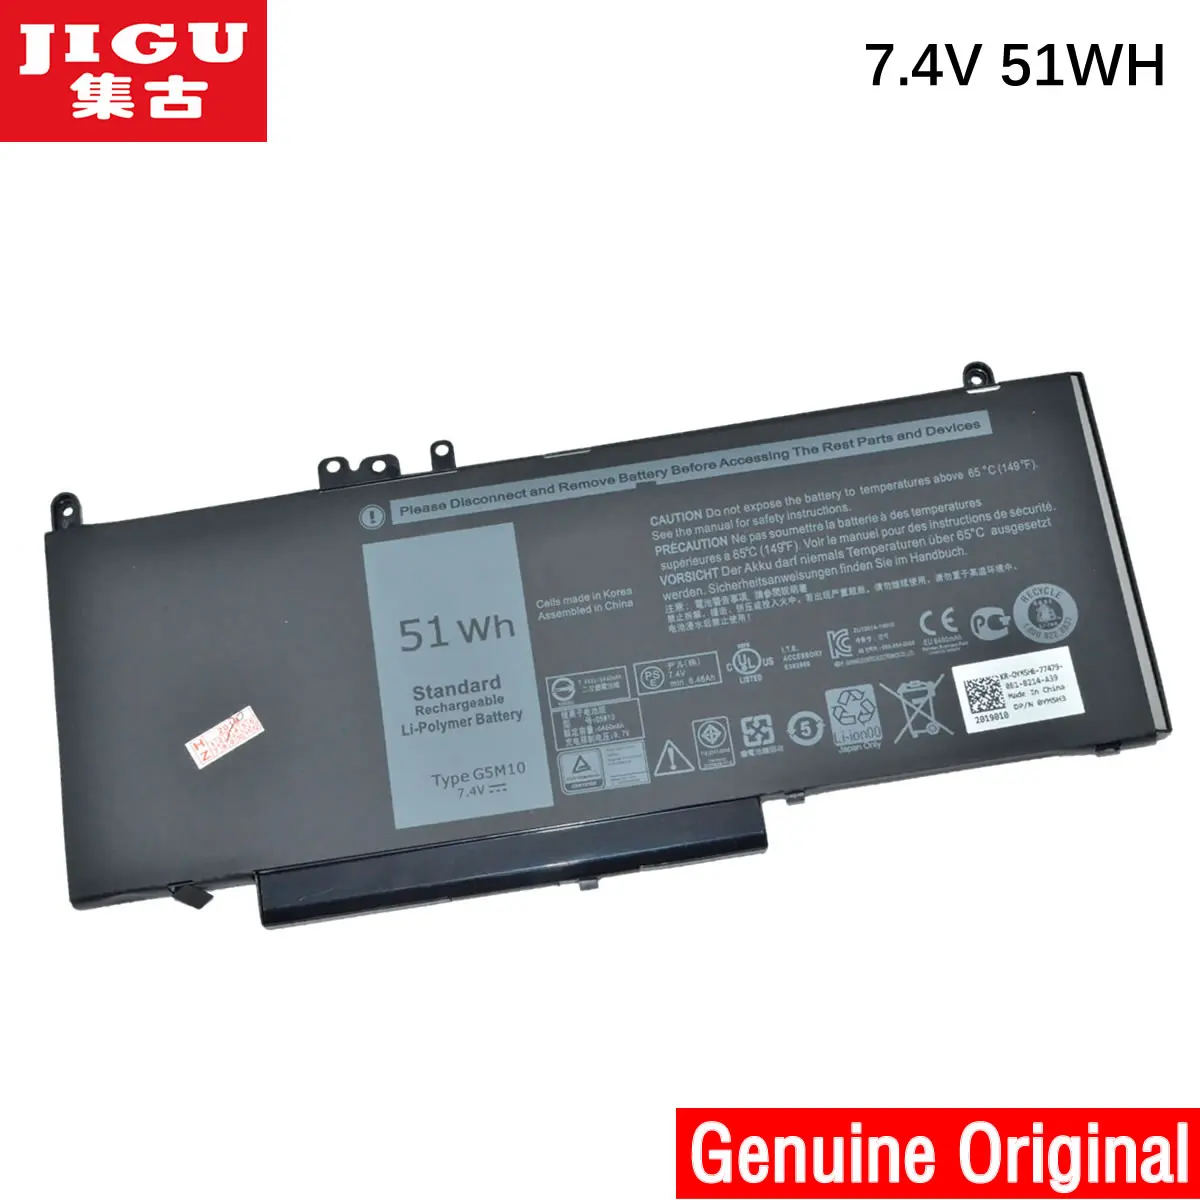 

JIGU Original 7.4V 51WH Laptop Battery for DELL Latitude E5450 E5550 Notebook 15.6" G5M10 WYJC2 R9XM9 8V5GX G5M10